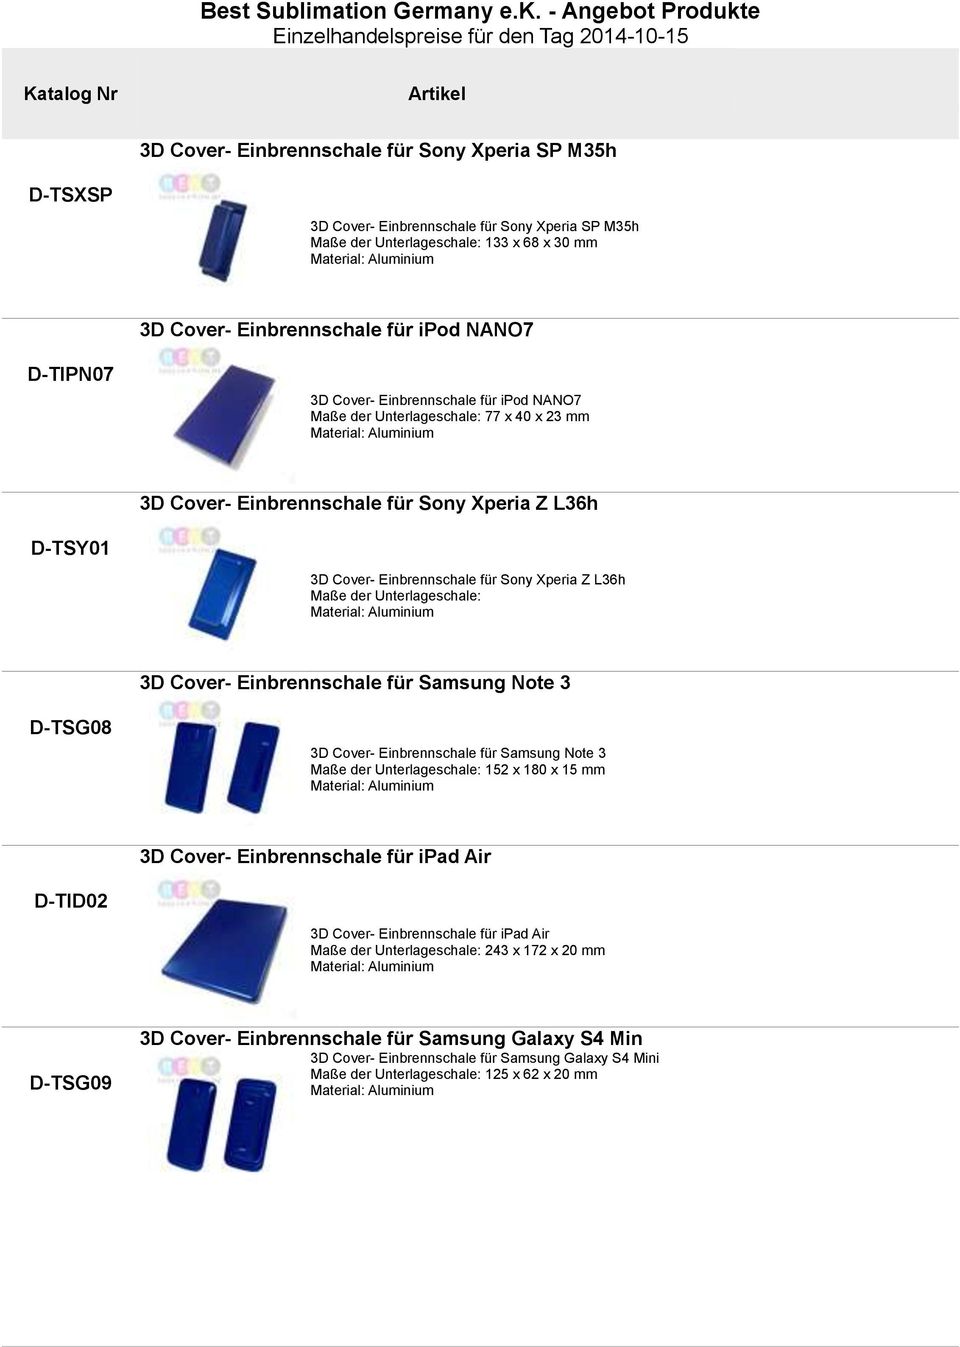 für Sony Xperia Z L36h Maße der Unterlageschale: Material: Aluminium 3D Cover- Einbrennschale für Samsung Note 3 TSG08 3D Cover- Einbrennschale für Samsung Note 3 Maße der Unterlageschale: 152 x 180